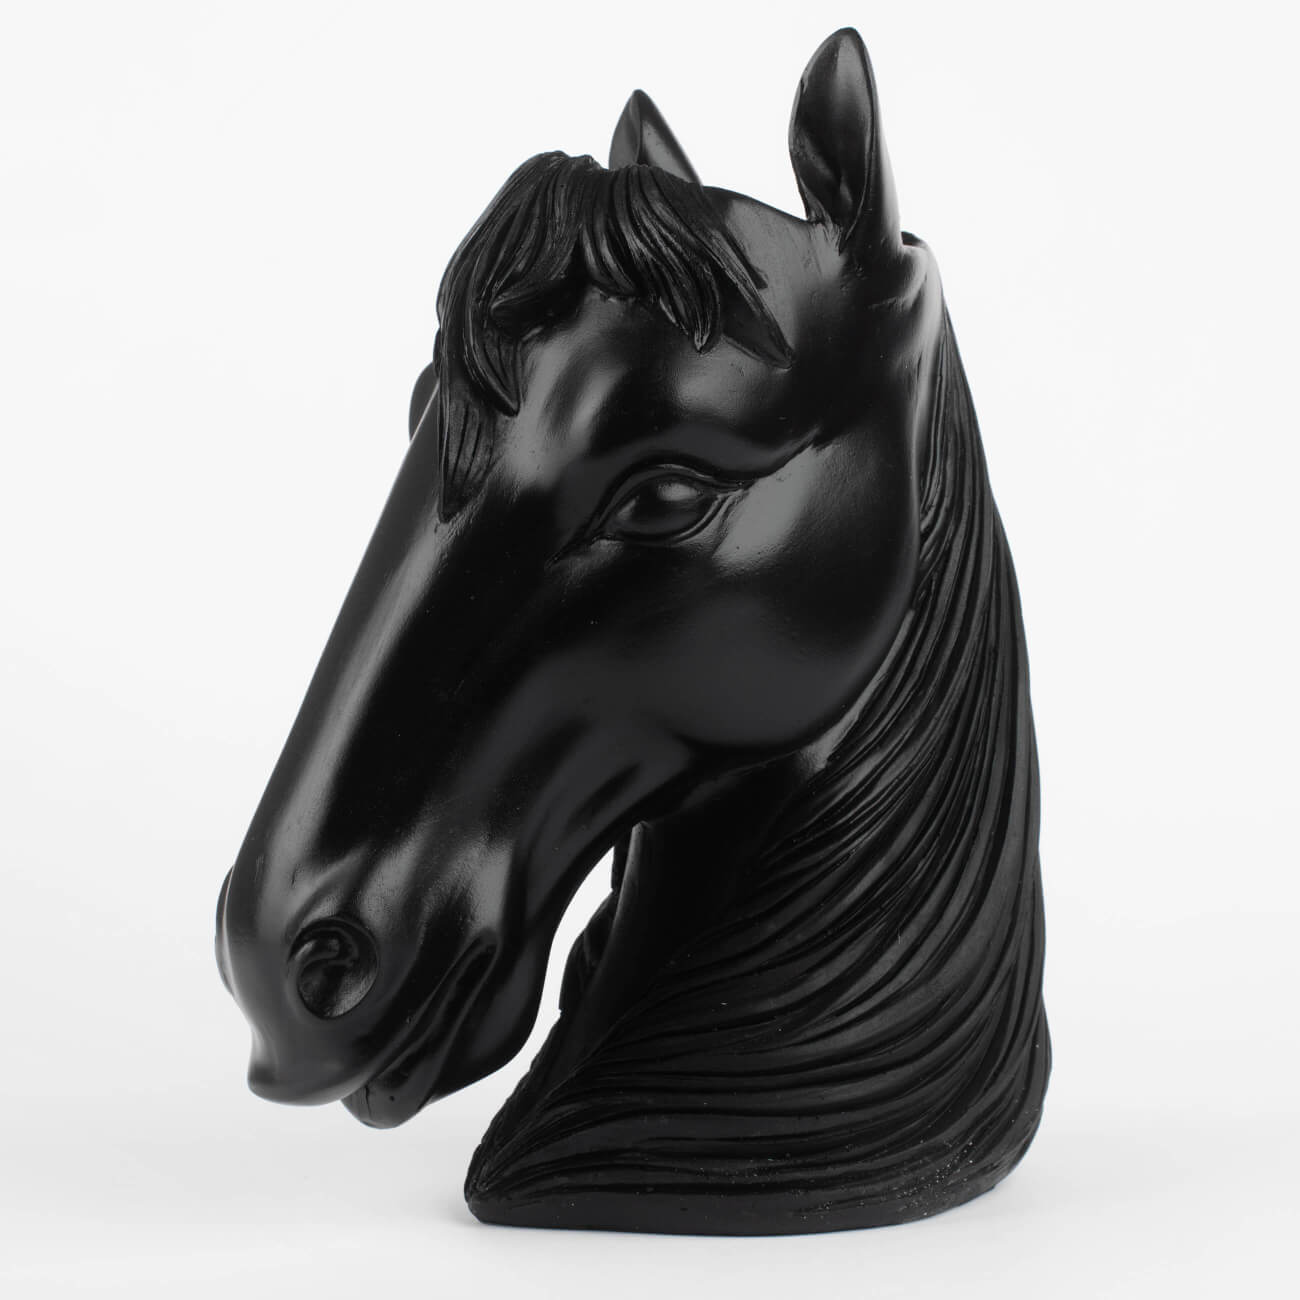 Ваза декоративная, 25 см, полирезин, черная, Голова лошади, Horse кашпо органайзер голова давида черная с золотом 11х10х11см